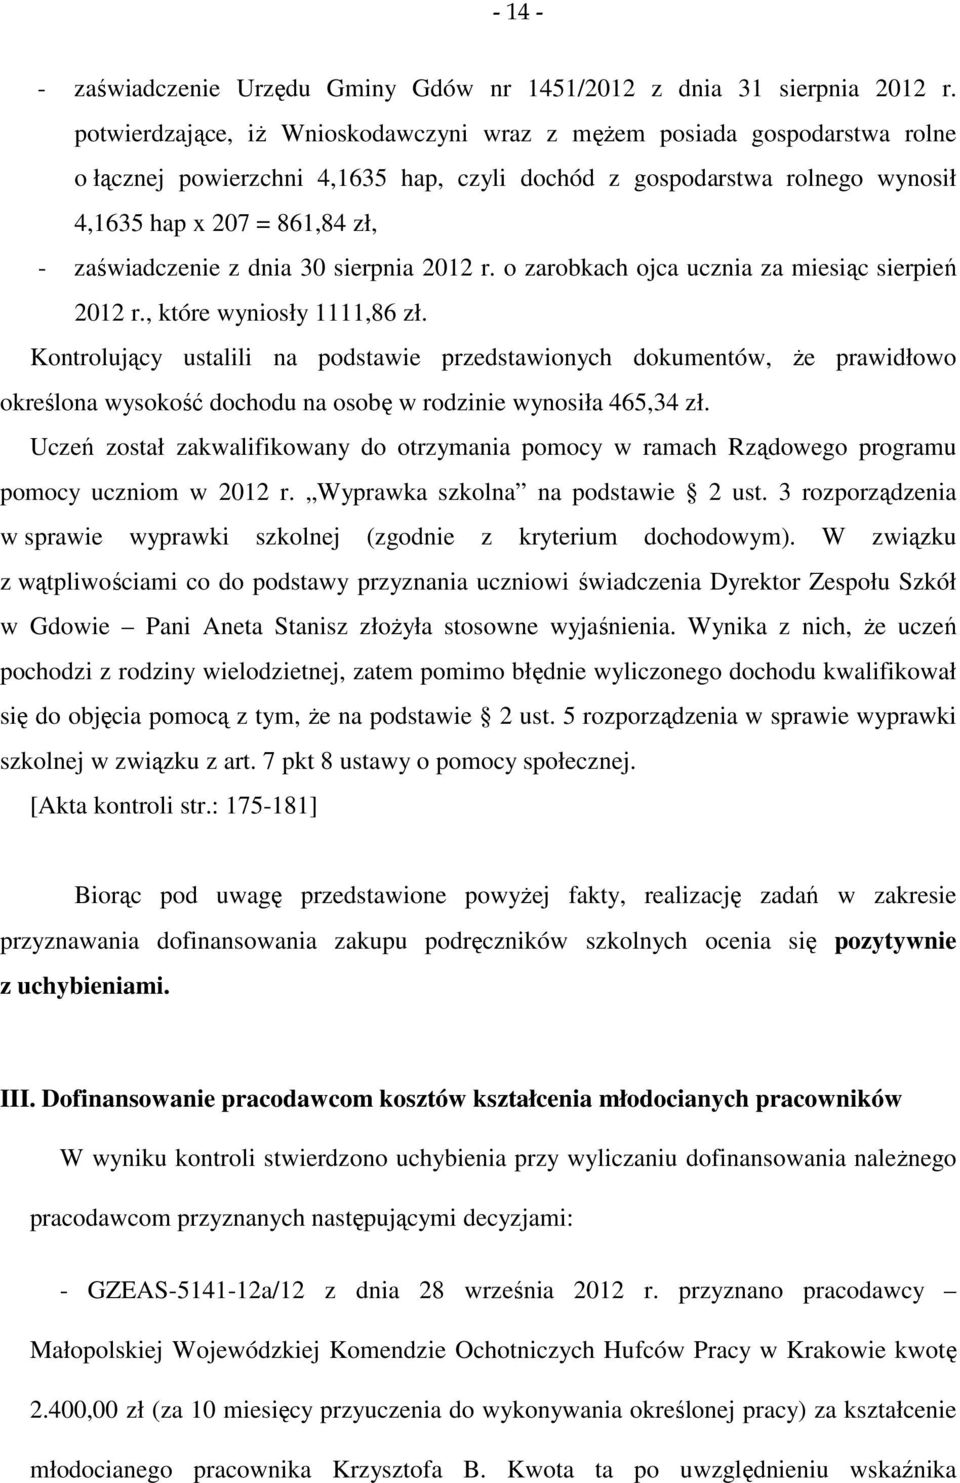 z dnia 30 sierpnia 2012 r. o zarobkach ojca ucznia za miesiąc sierpień 2012 r., które wyniosły 1111,86 zł.